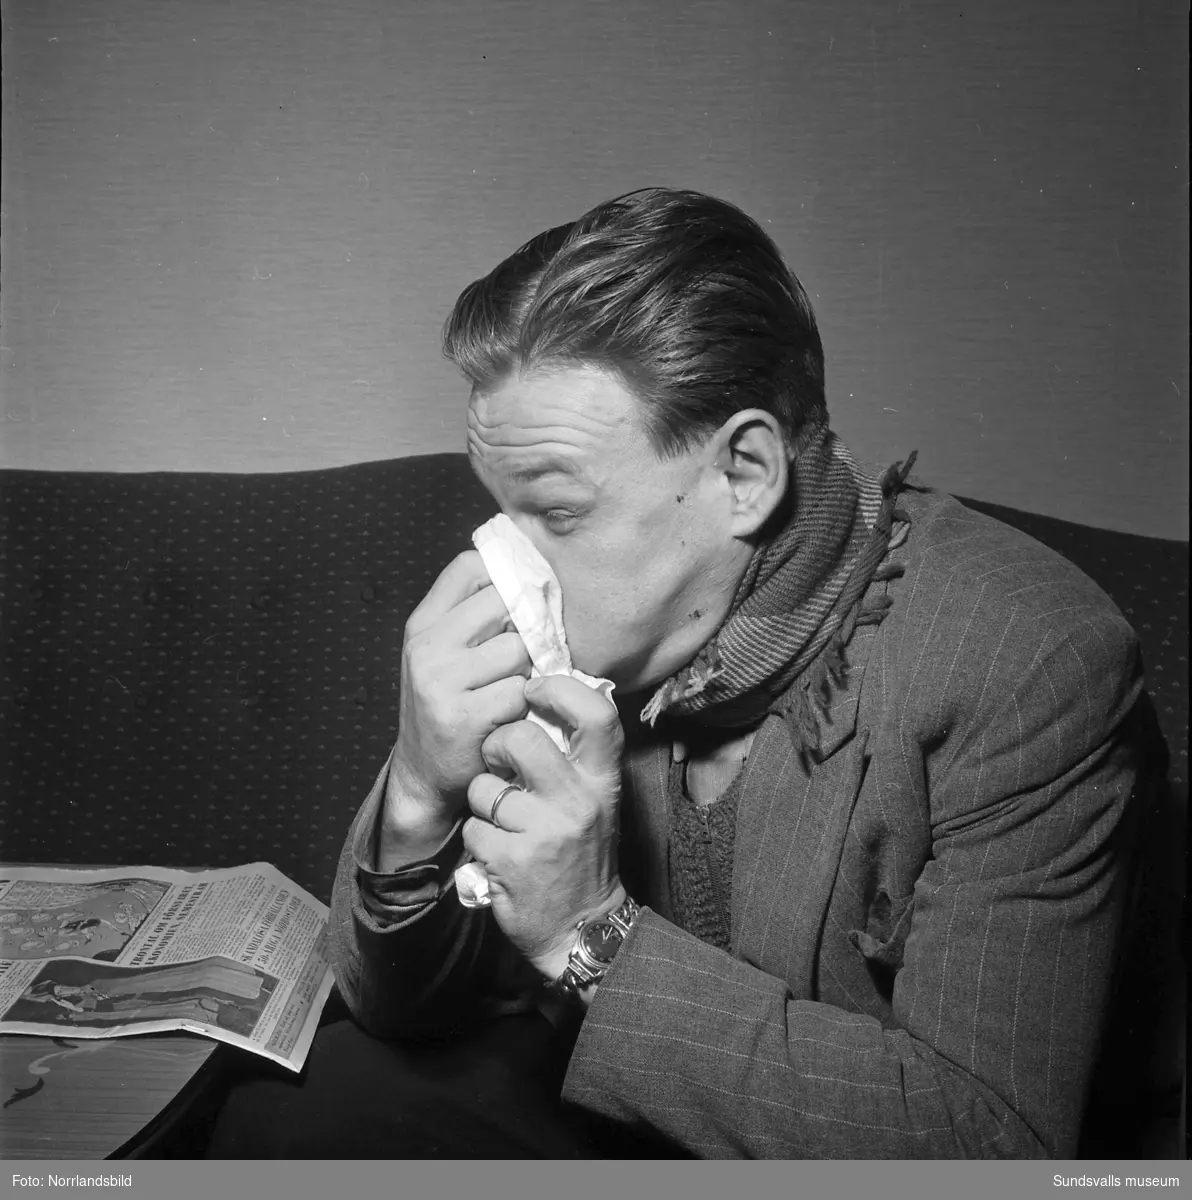 Bilder till ett reportage om influensans härjning vintern 1950-51. En man undersöks av en läkare och en sköterska vid Sundvalls lasarett. Läkaren är troligen överläkare Elias Lipschütz som rekommenderar C-vitamin i form av citroner, nypon och paprika. I reportaget uttalar sig även andre stadsläkare R. Adolfsson vars råd är att undvika folksamlingar samt tvätta händerna och gurgla halsen ofta.